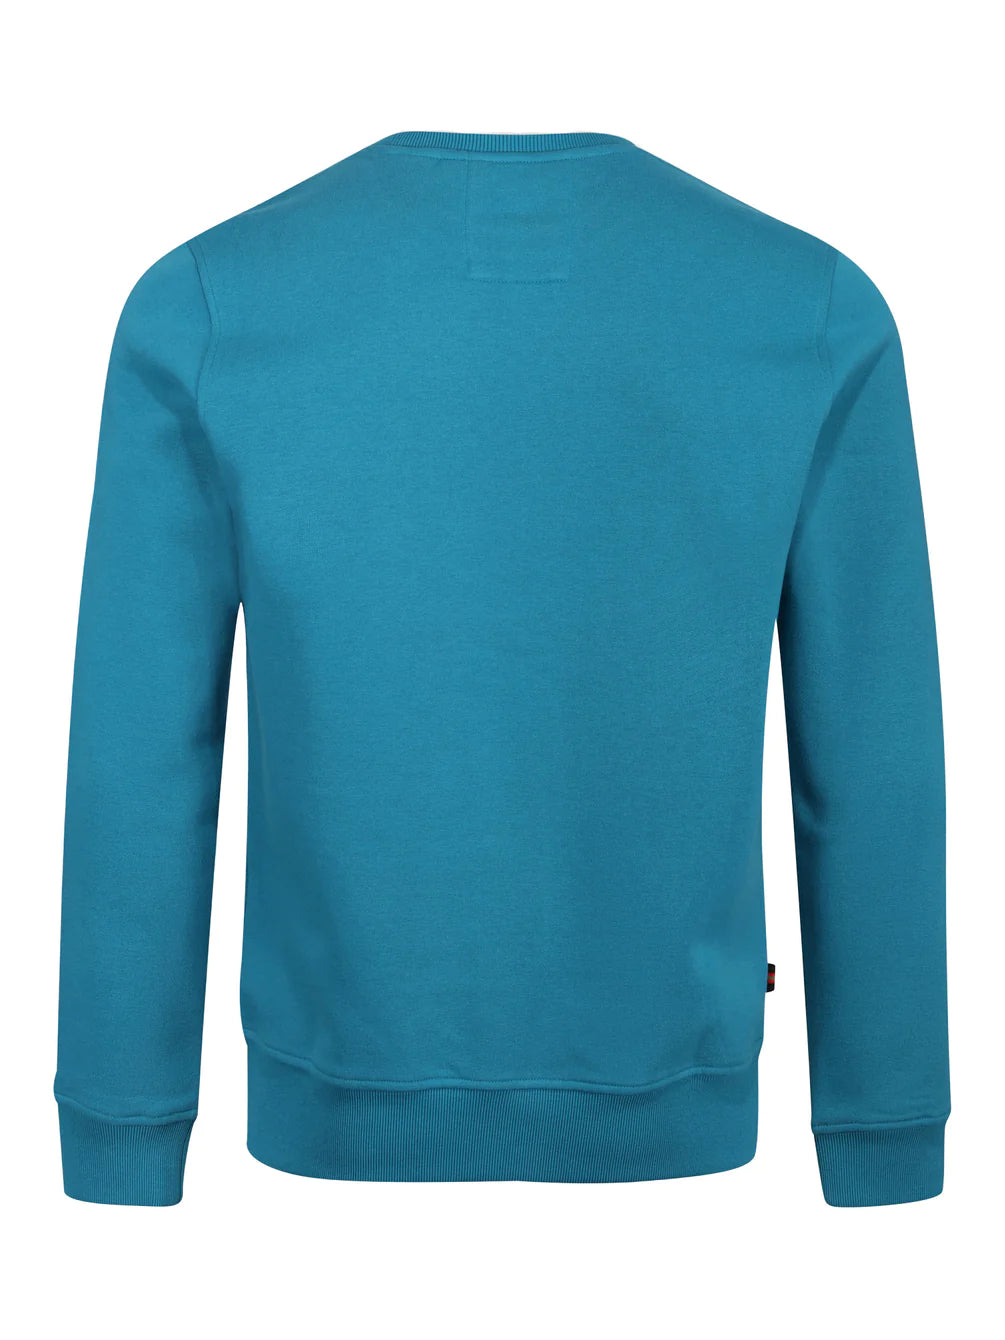 Luke 1977 - London Sweatshirt Med Blue